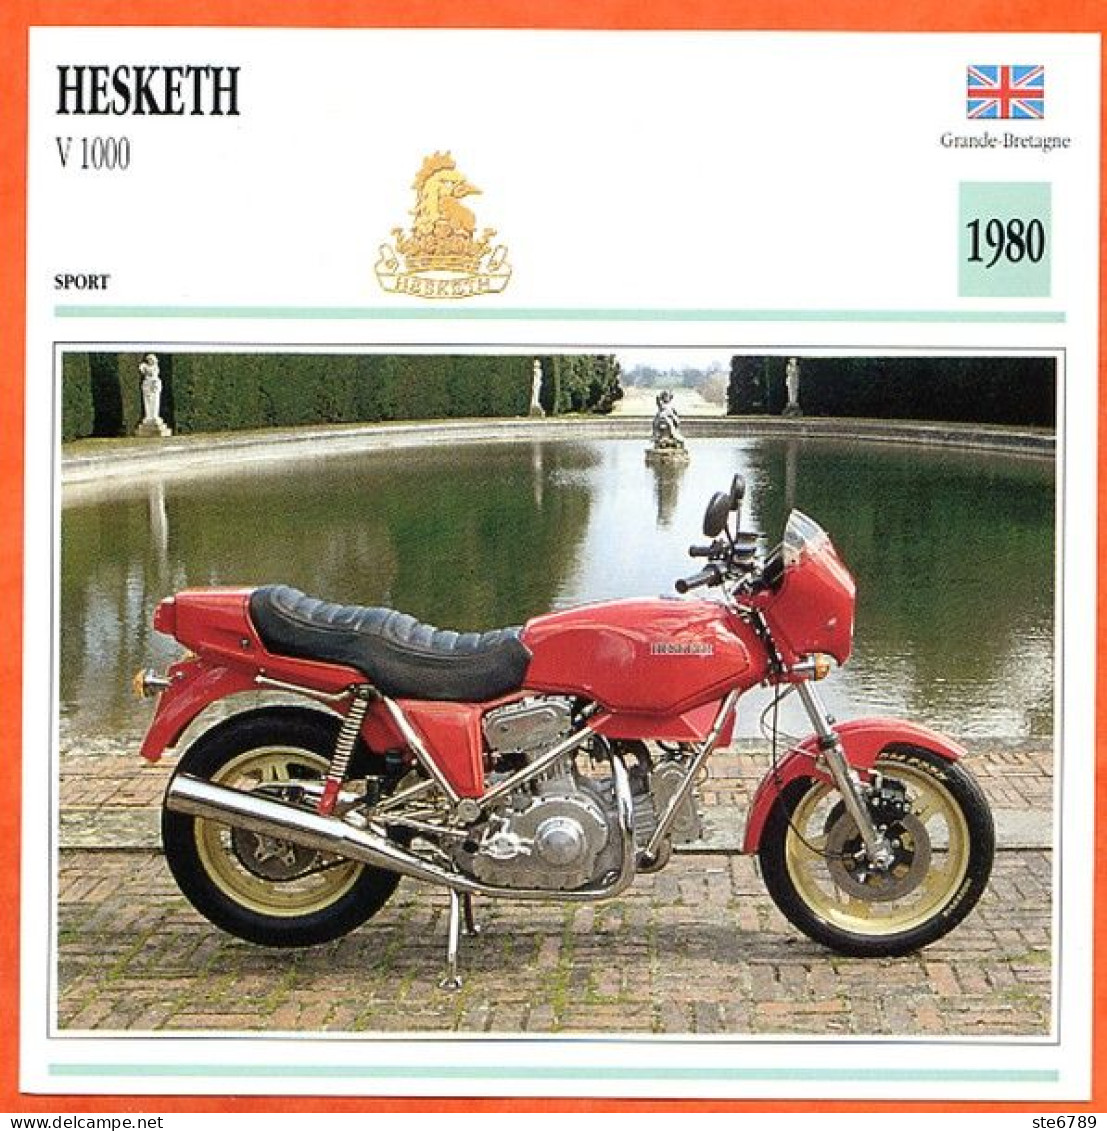 HESKETH V 1000  1980 UK Fiche Technique Moto - Sport